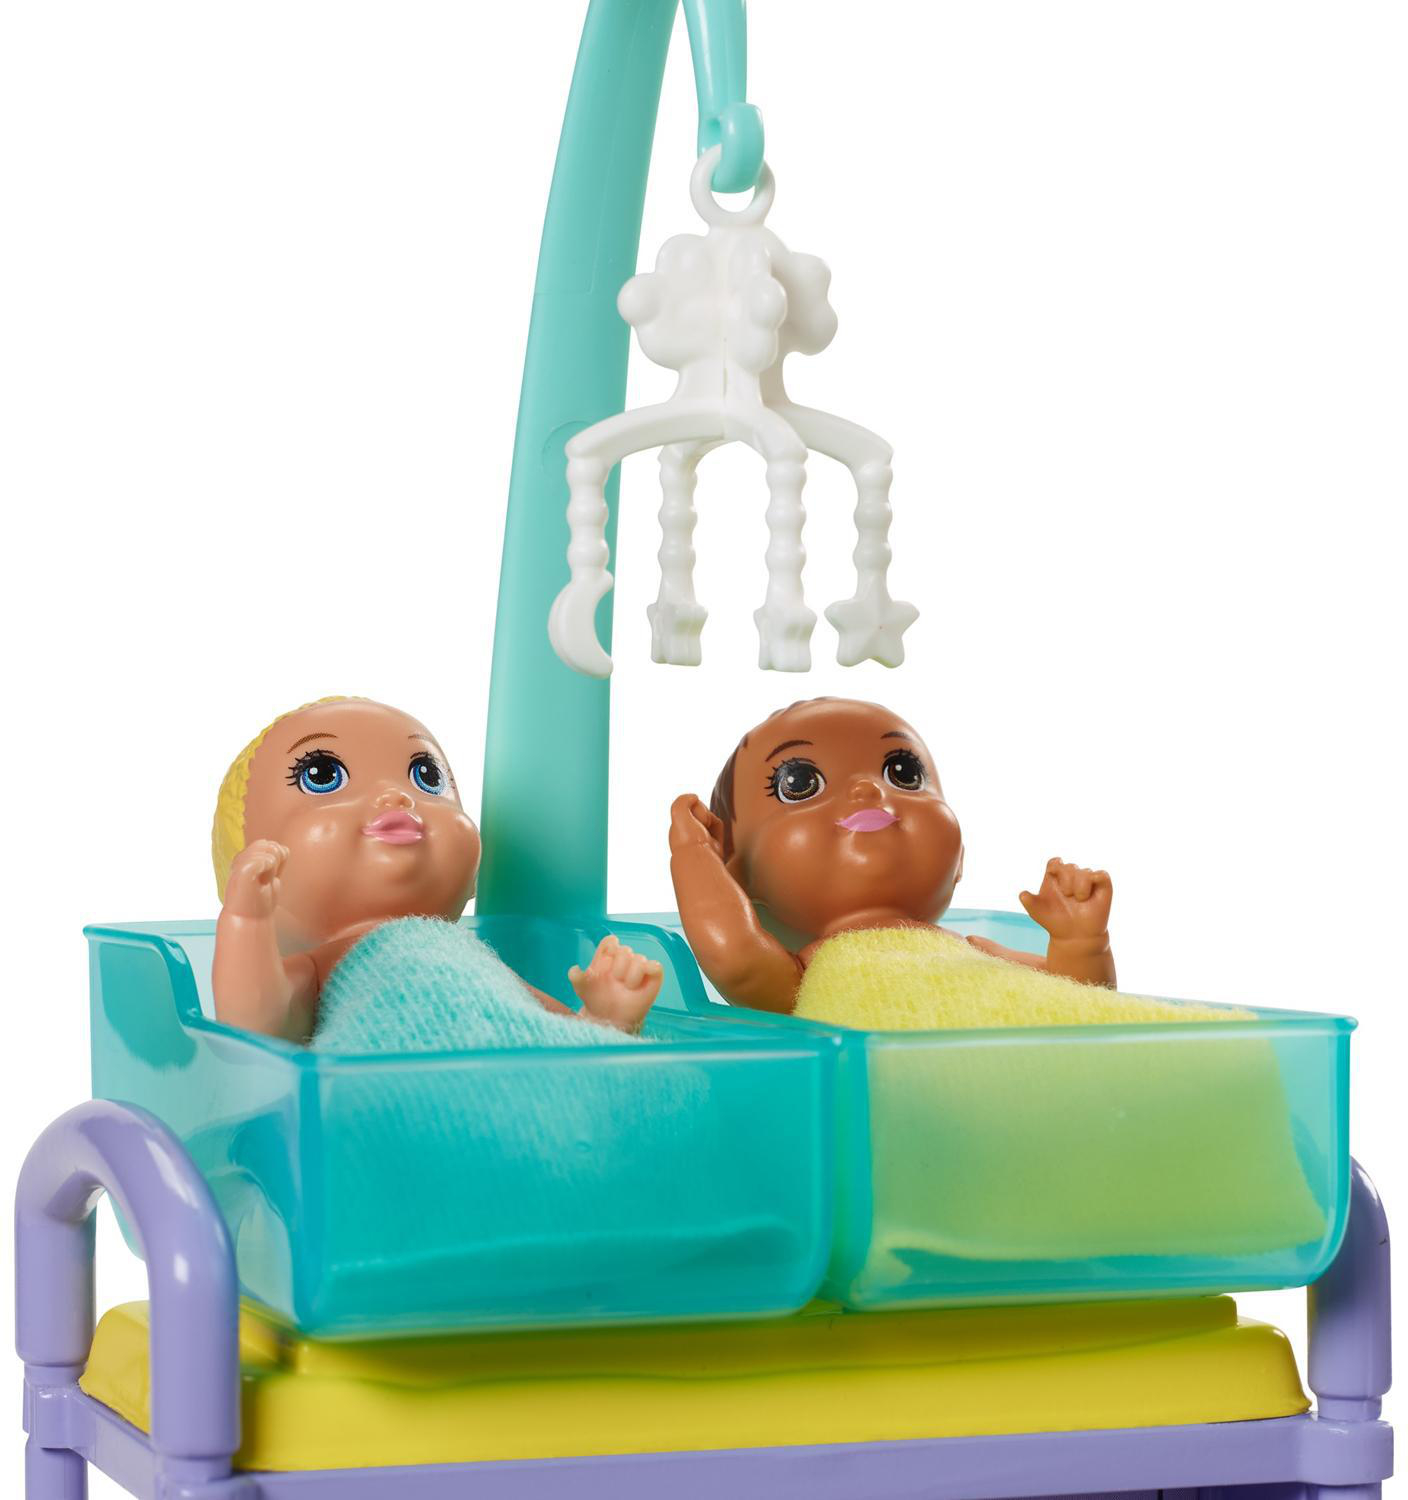 BARBIE Mehrfarbig Kinderärztin Spielset Puppe (blond)